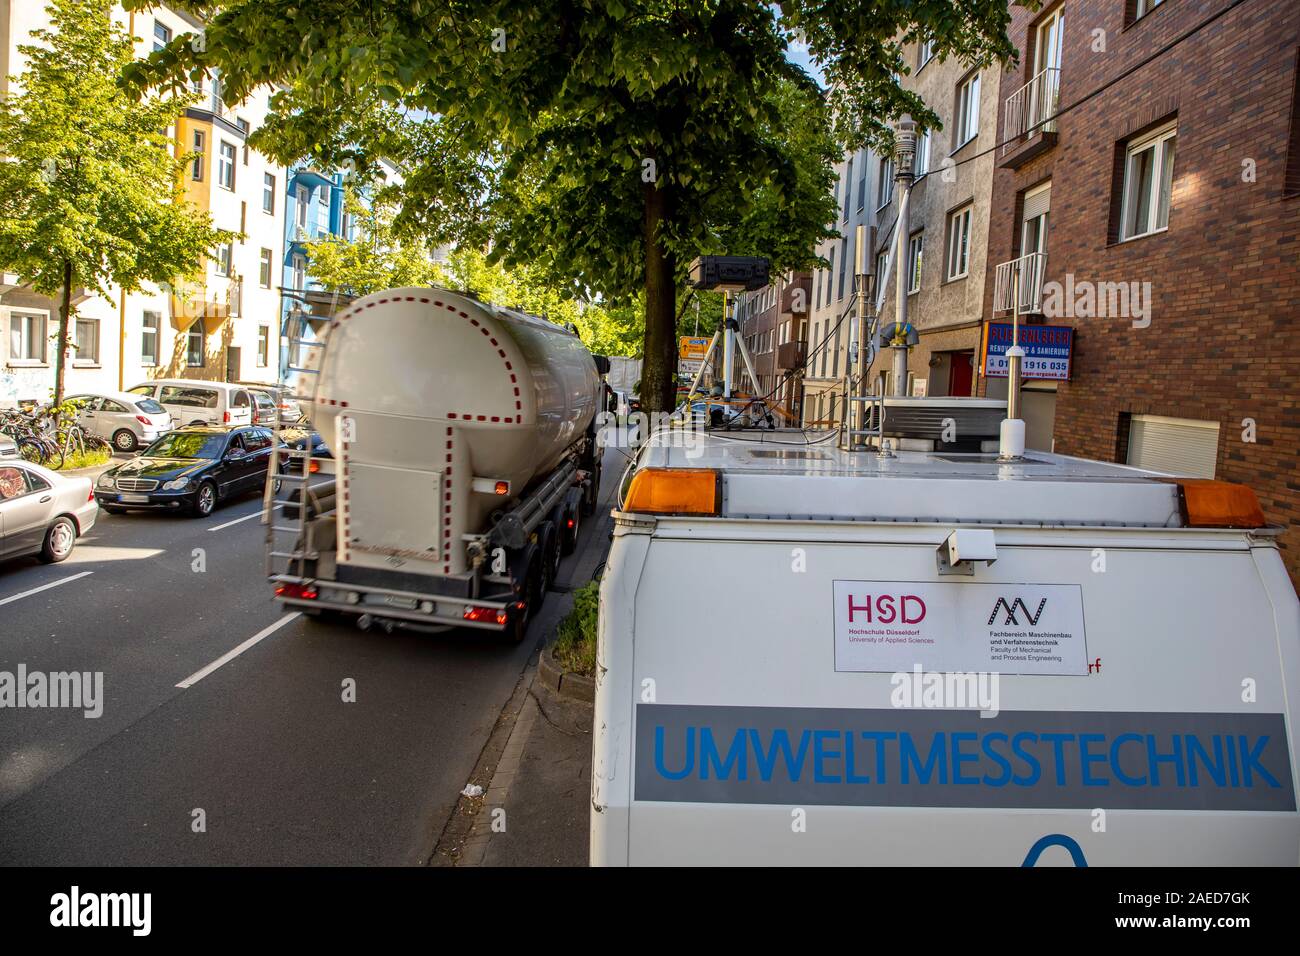 Düsseldorf, ambientales lane Merowinger Street, en el distrito de estafarle, sólo taxis, ciclistas, autobuses y e-cars pueden conducir en el carril derecho reservado Foto de stock